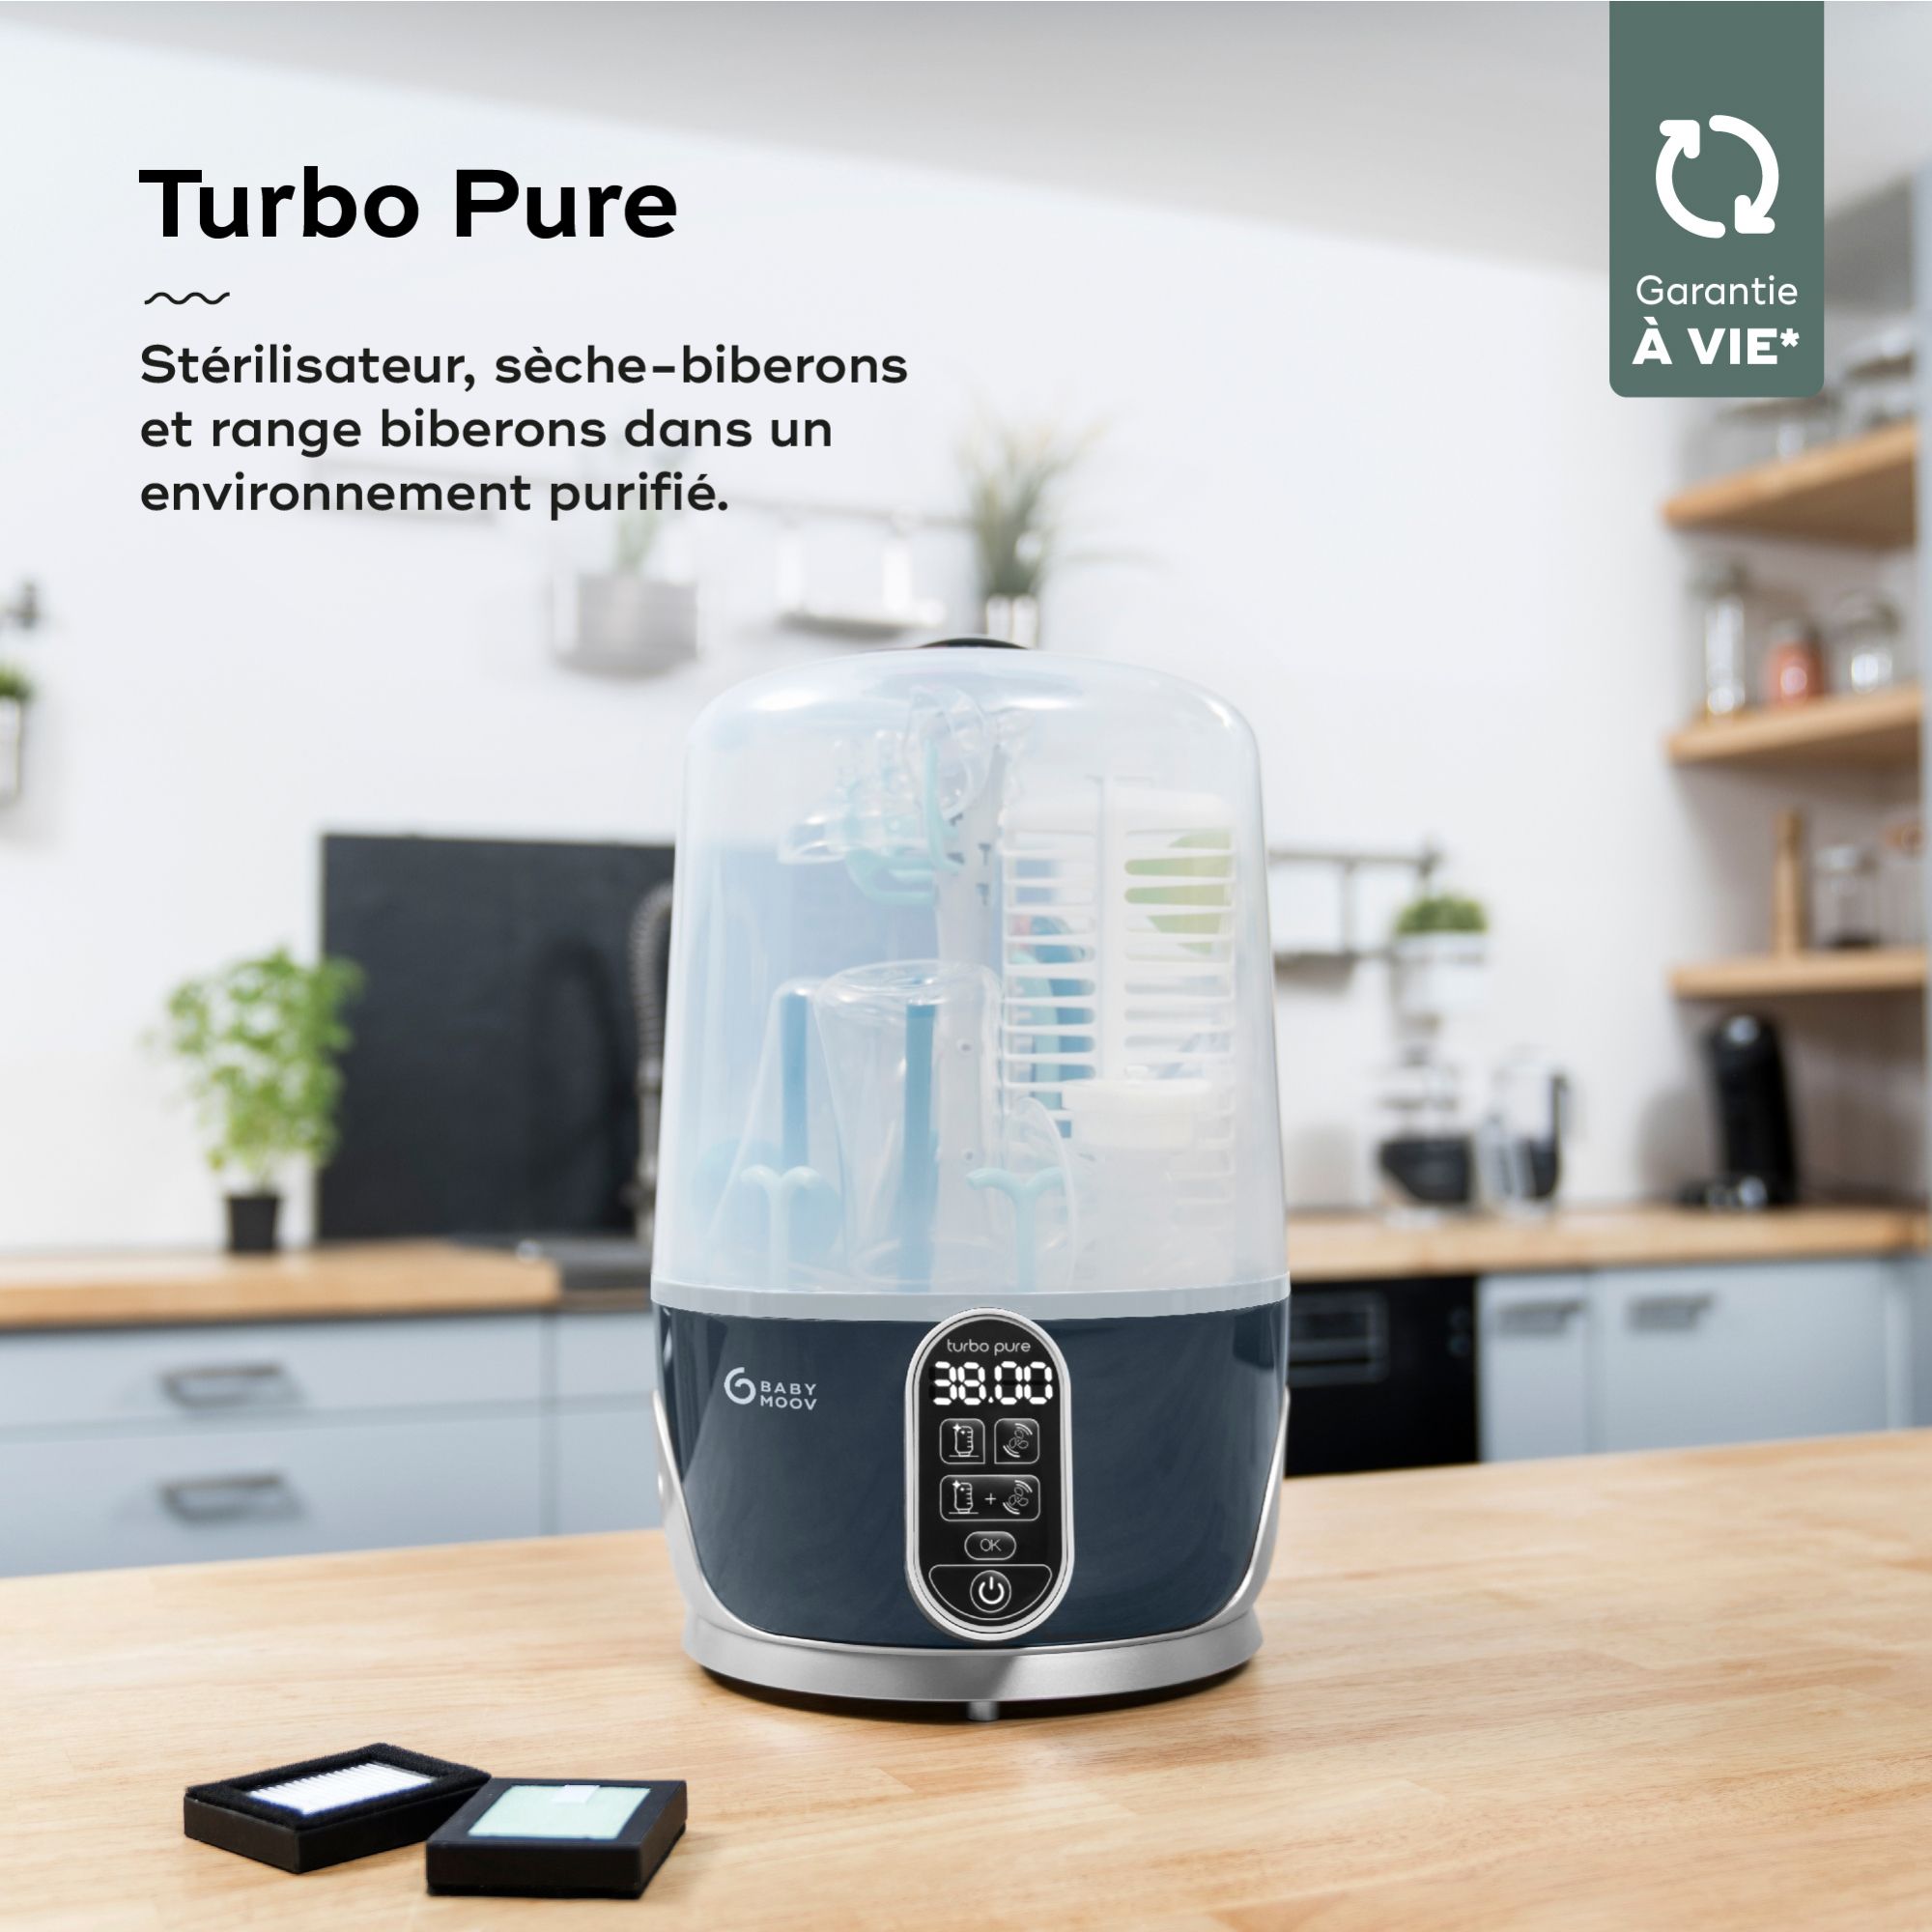 Stérilisateur et sèche biberon Turbo Pure - Made in Bébé